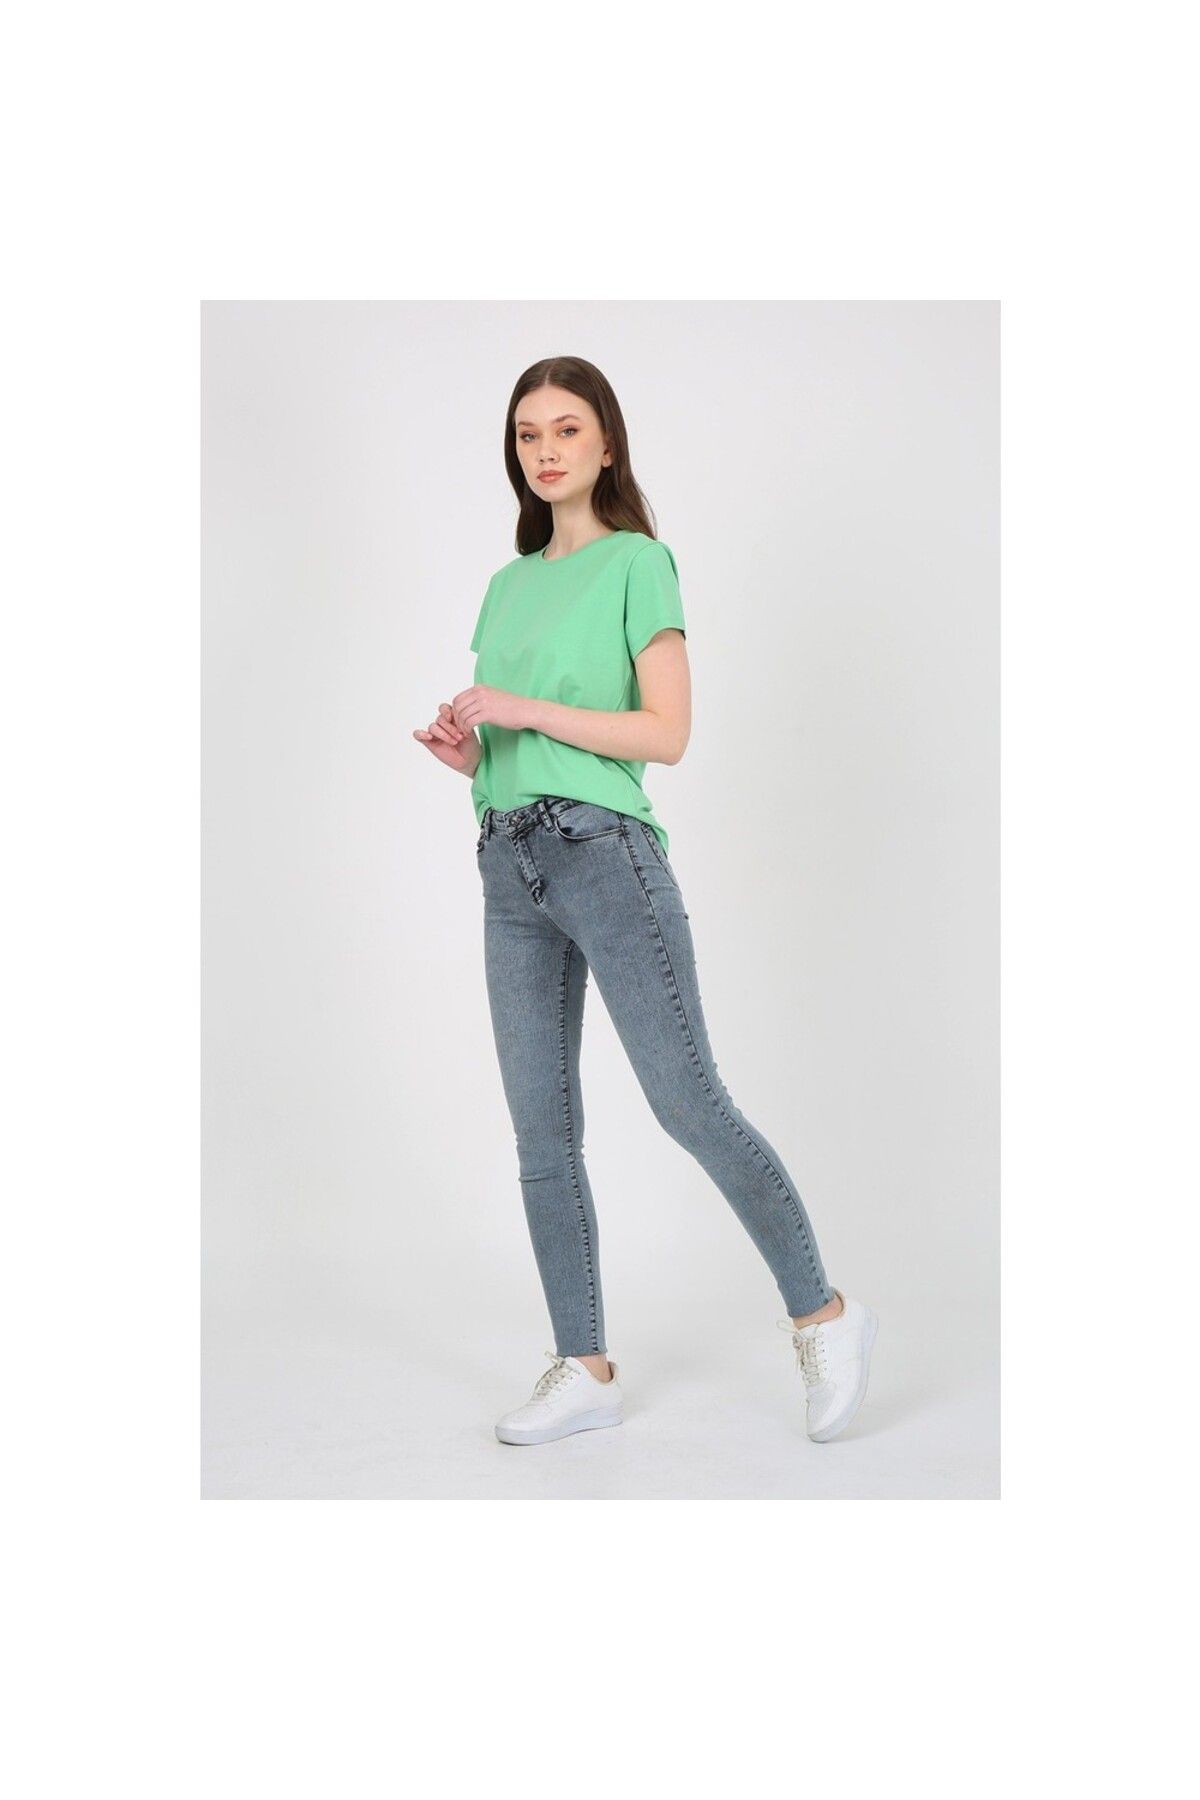 Twister Jeans Mindy 9205-60 Light Snow Likralı Dar Paça Kadın Kot Pantolon